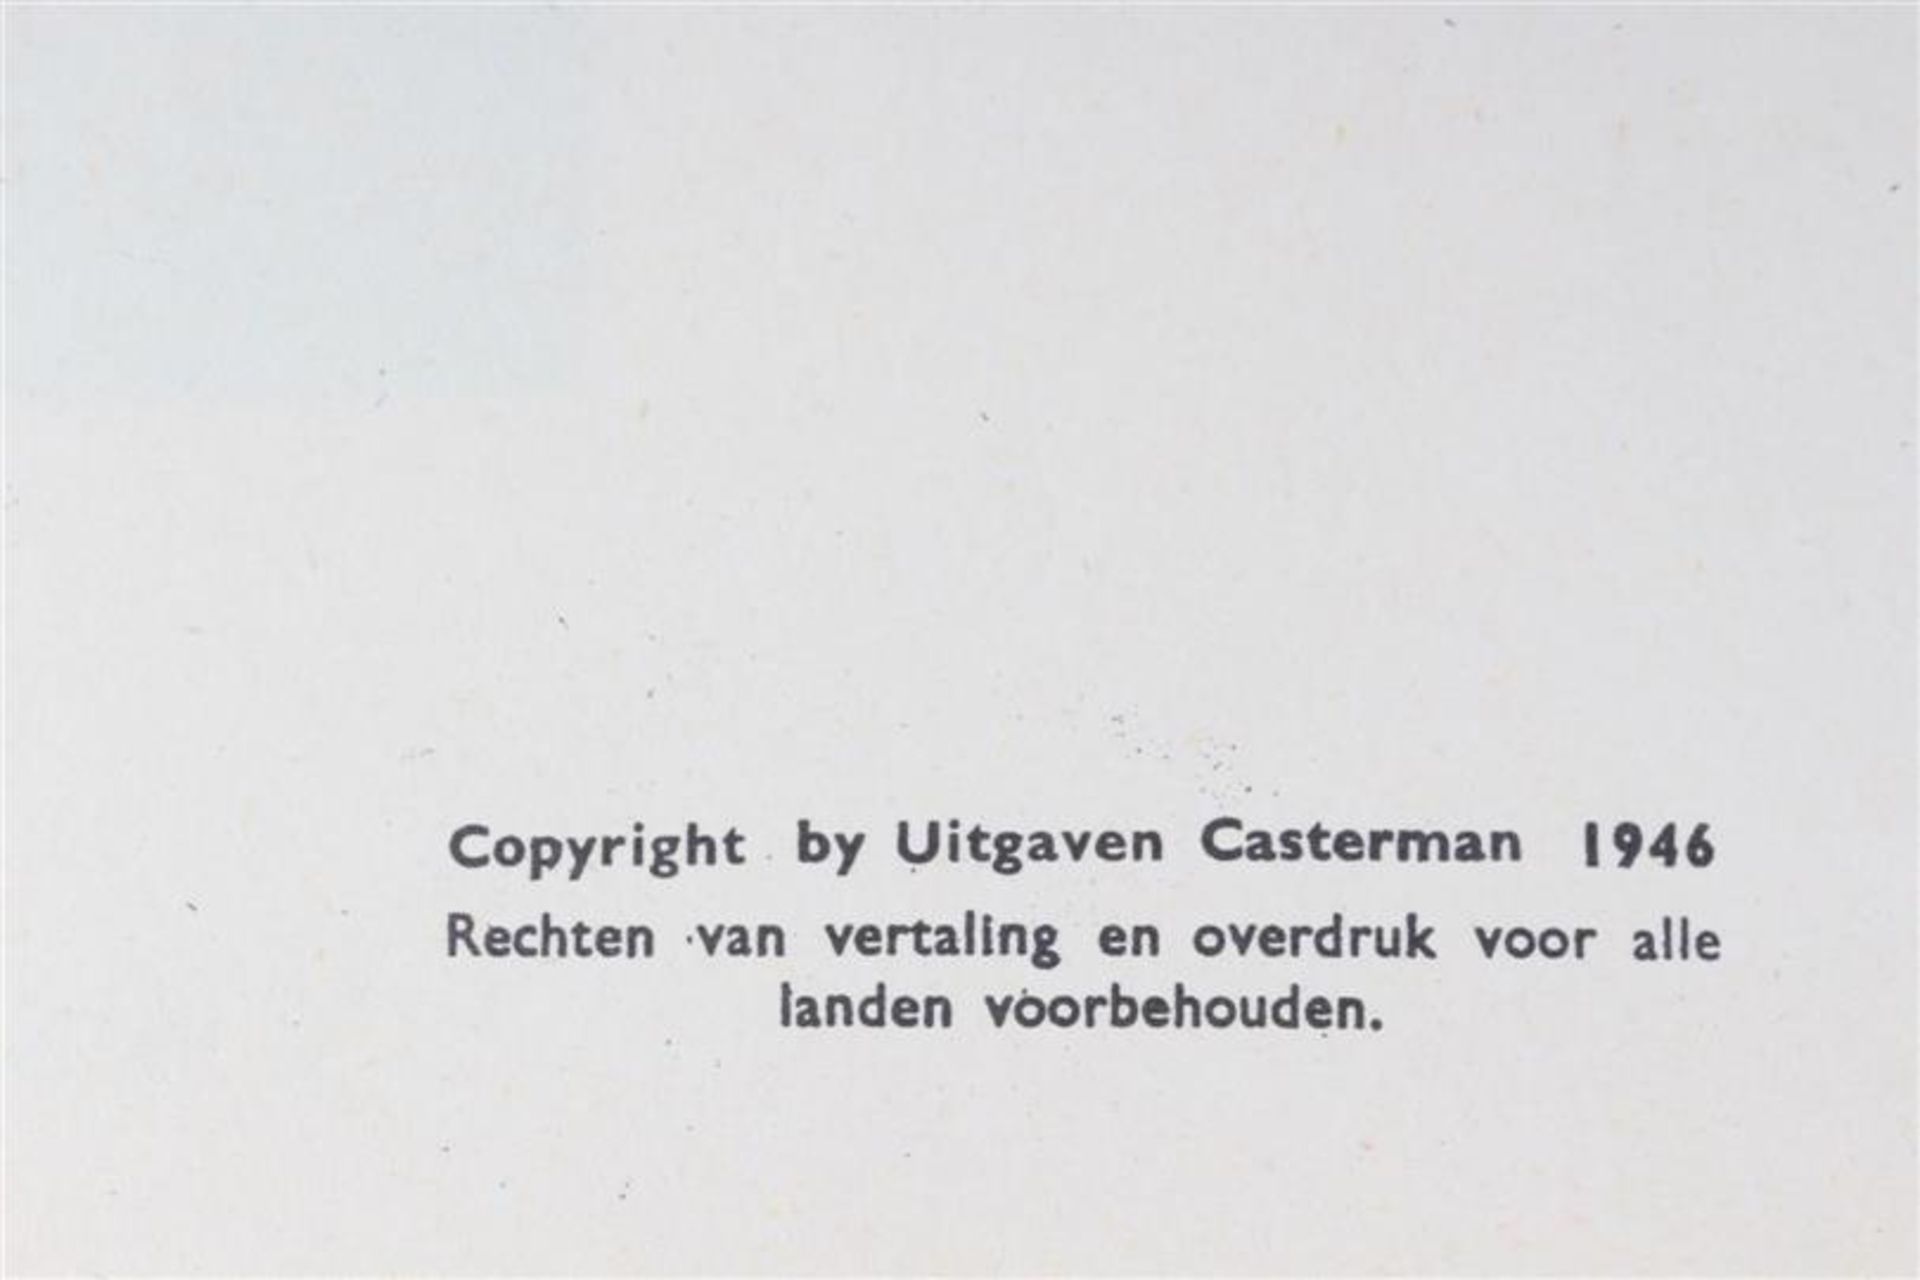 De avonturen van Kuifje, Hergé, uitgeverij Casterman, 7 hardcovers en drie softcovers. - Bild 3 aus 17